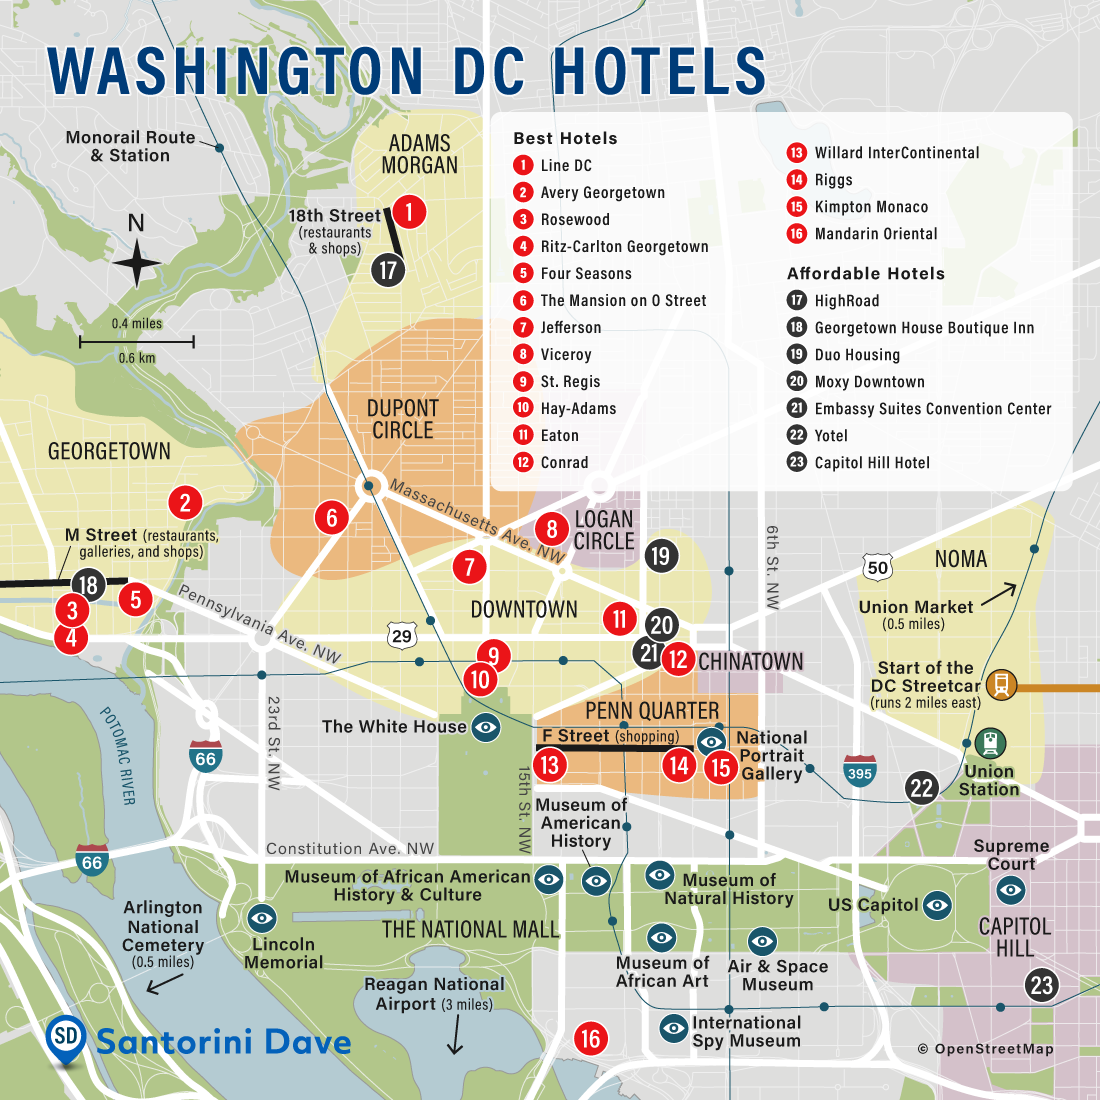 Map of Washington DC Hotels and Neighborhoods